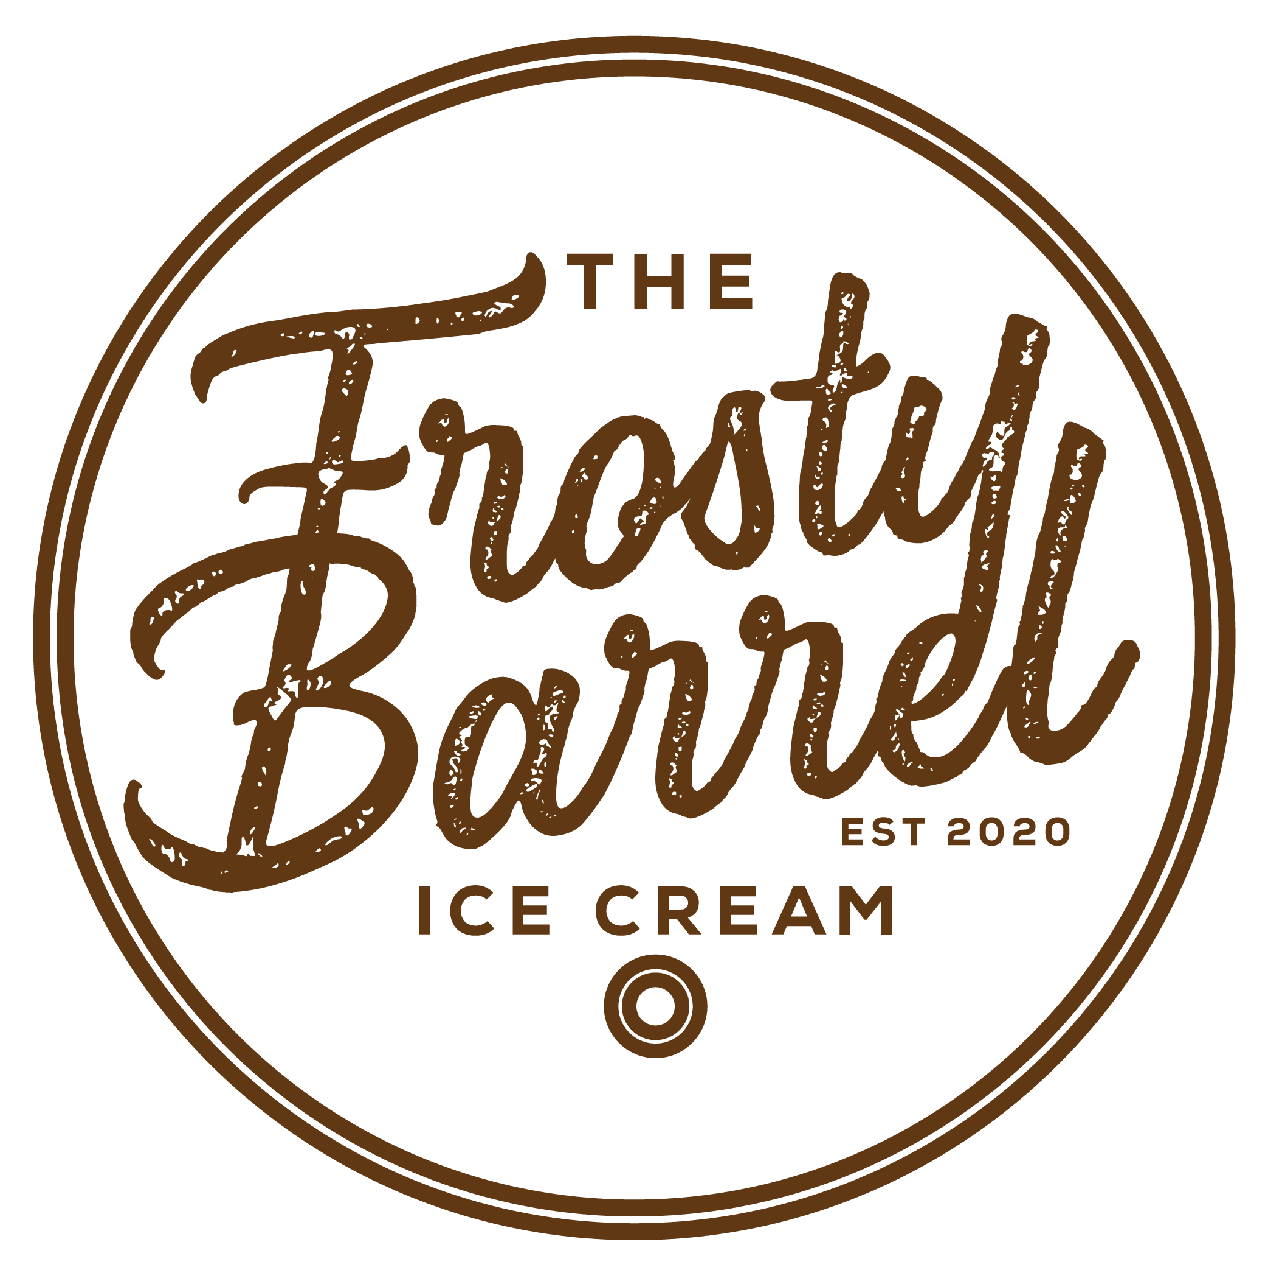 Frosty Barrel